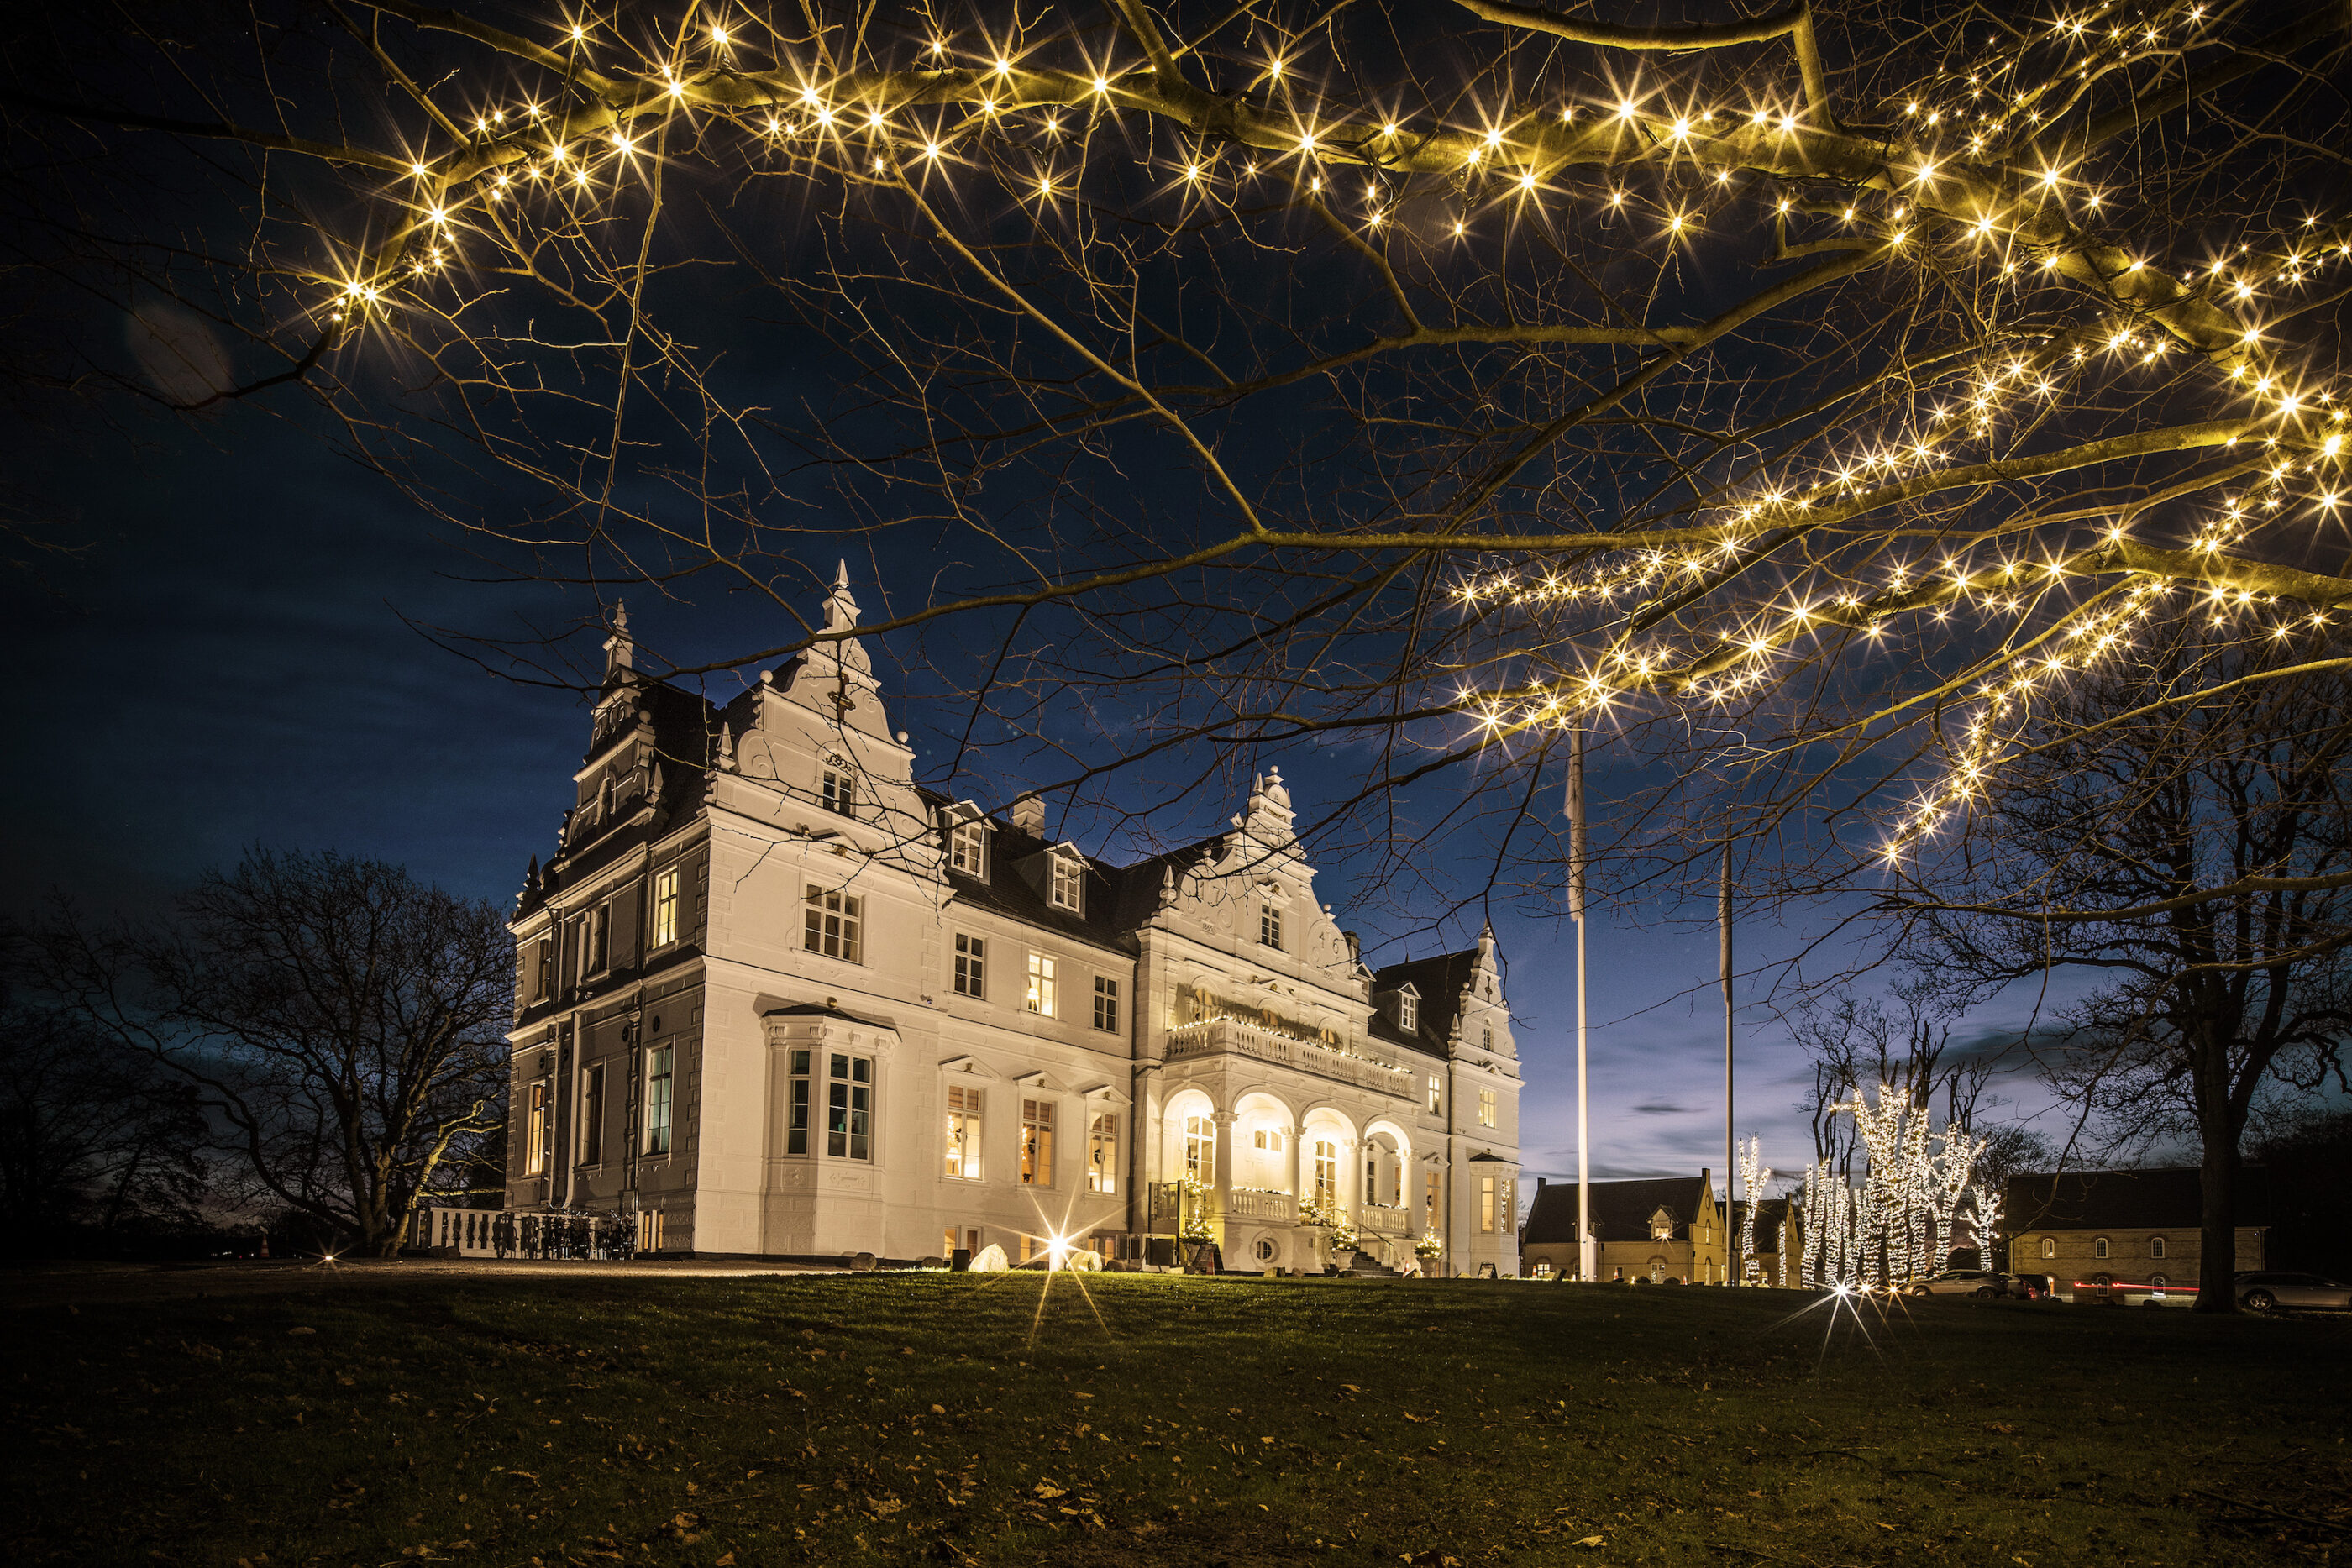 Kokkedal Slot om natten med julelys dekoreret på træerne foran slottet